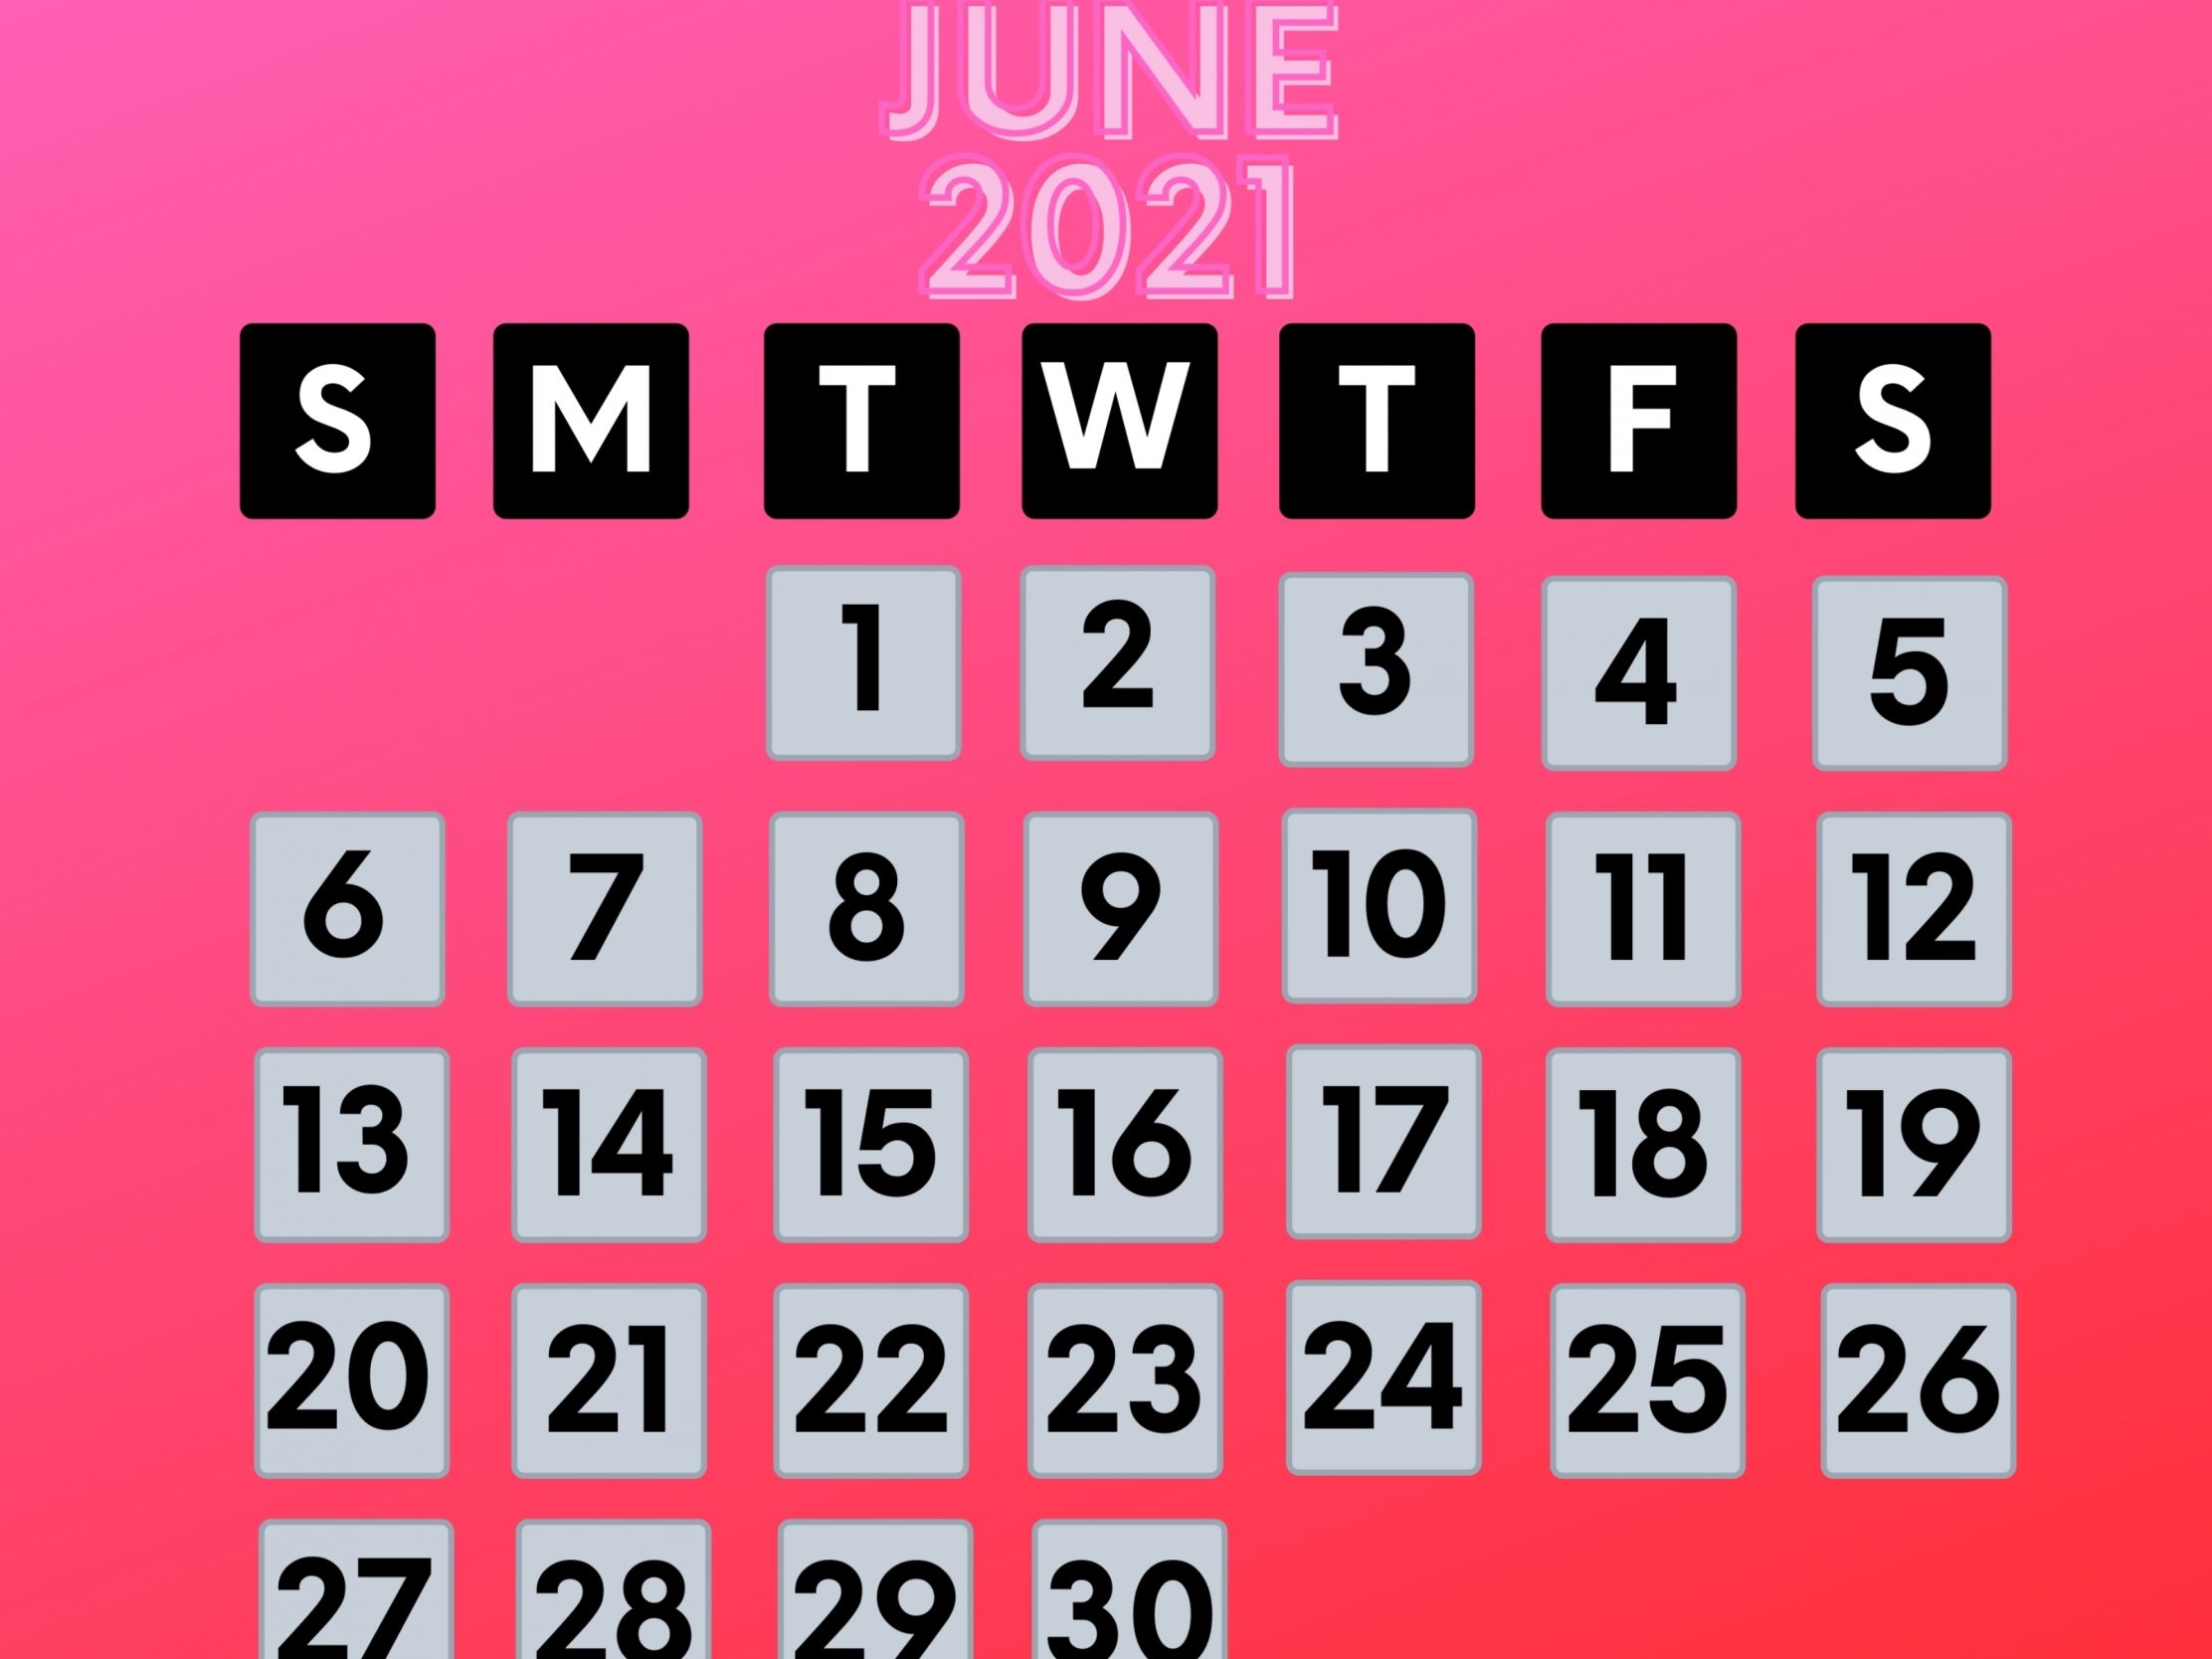 2224x1668 iPad Pro wallpapers June 2021 Calendar iPad Wallpaper 2224x1668 pixels resolution